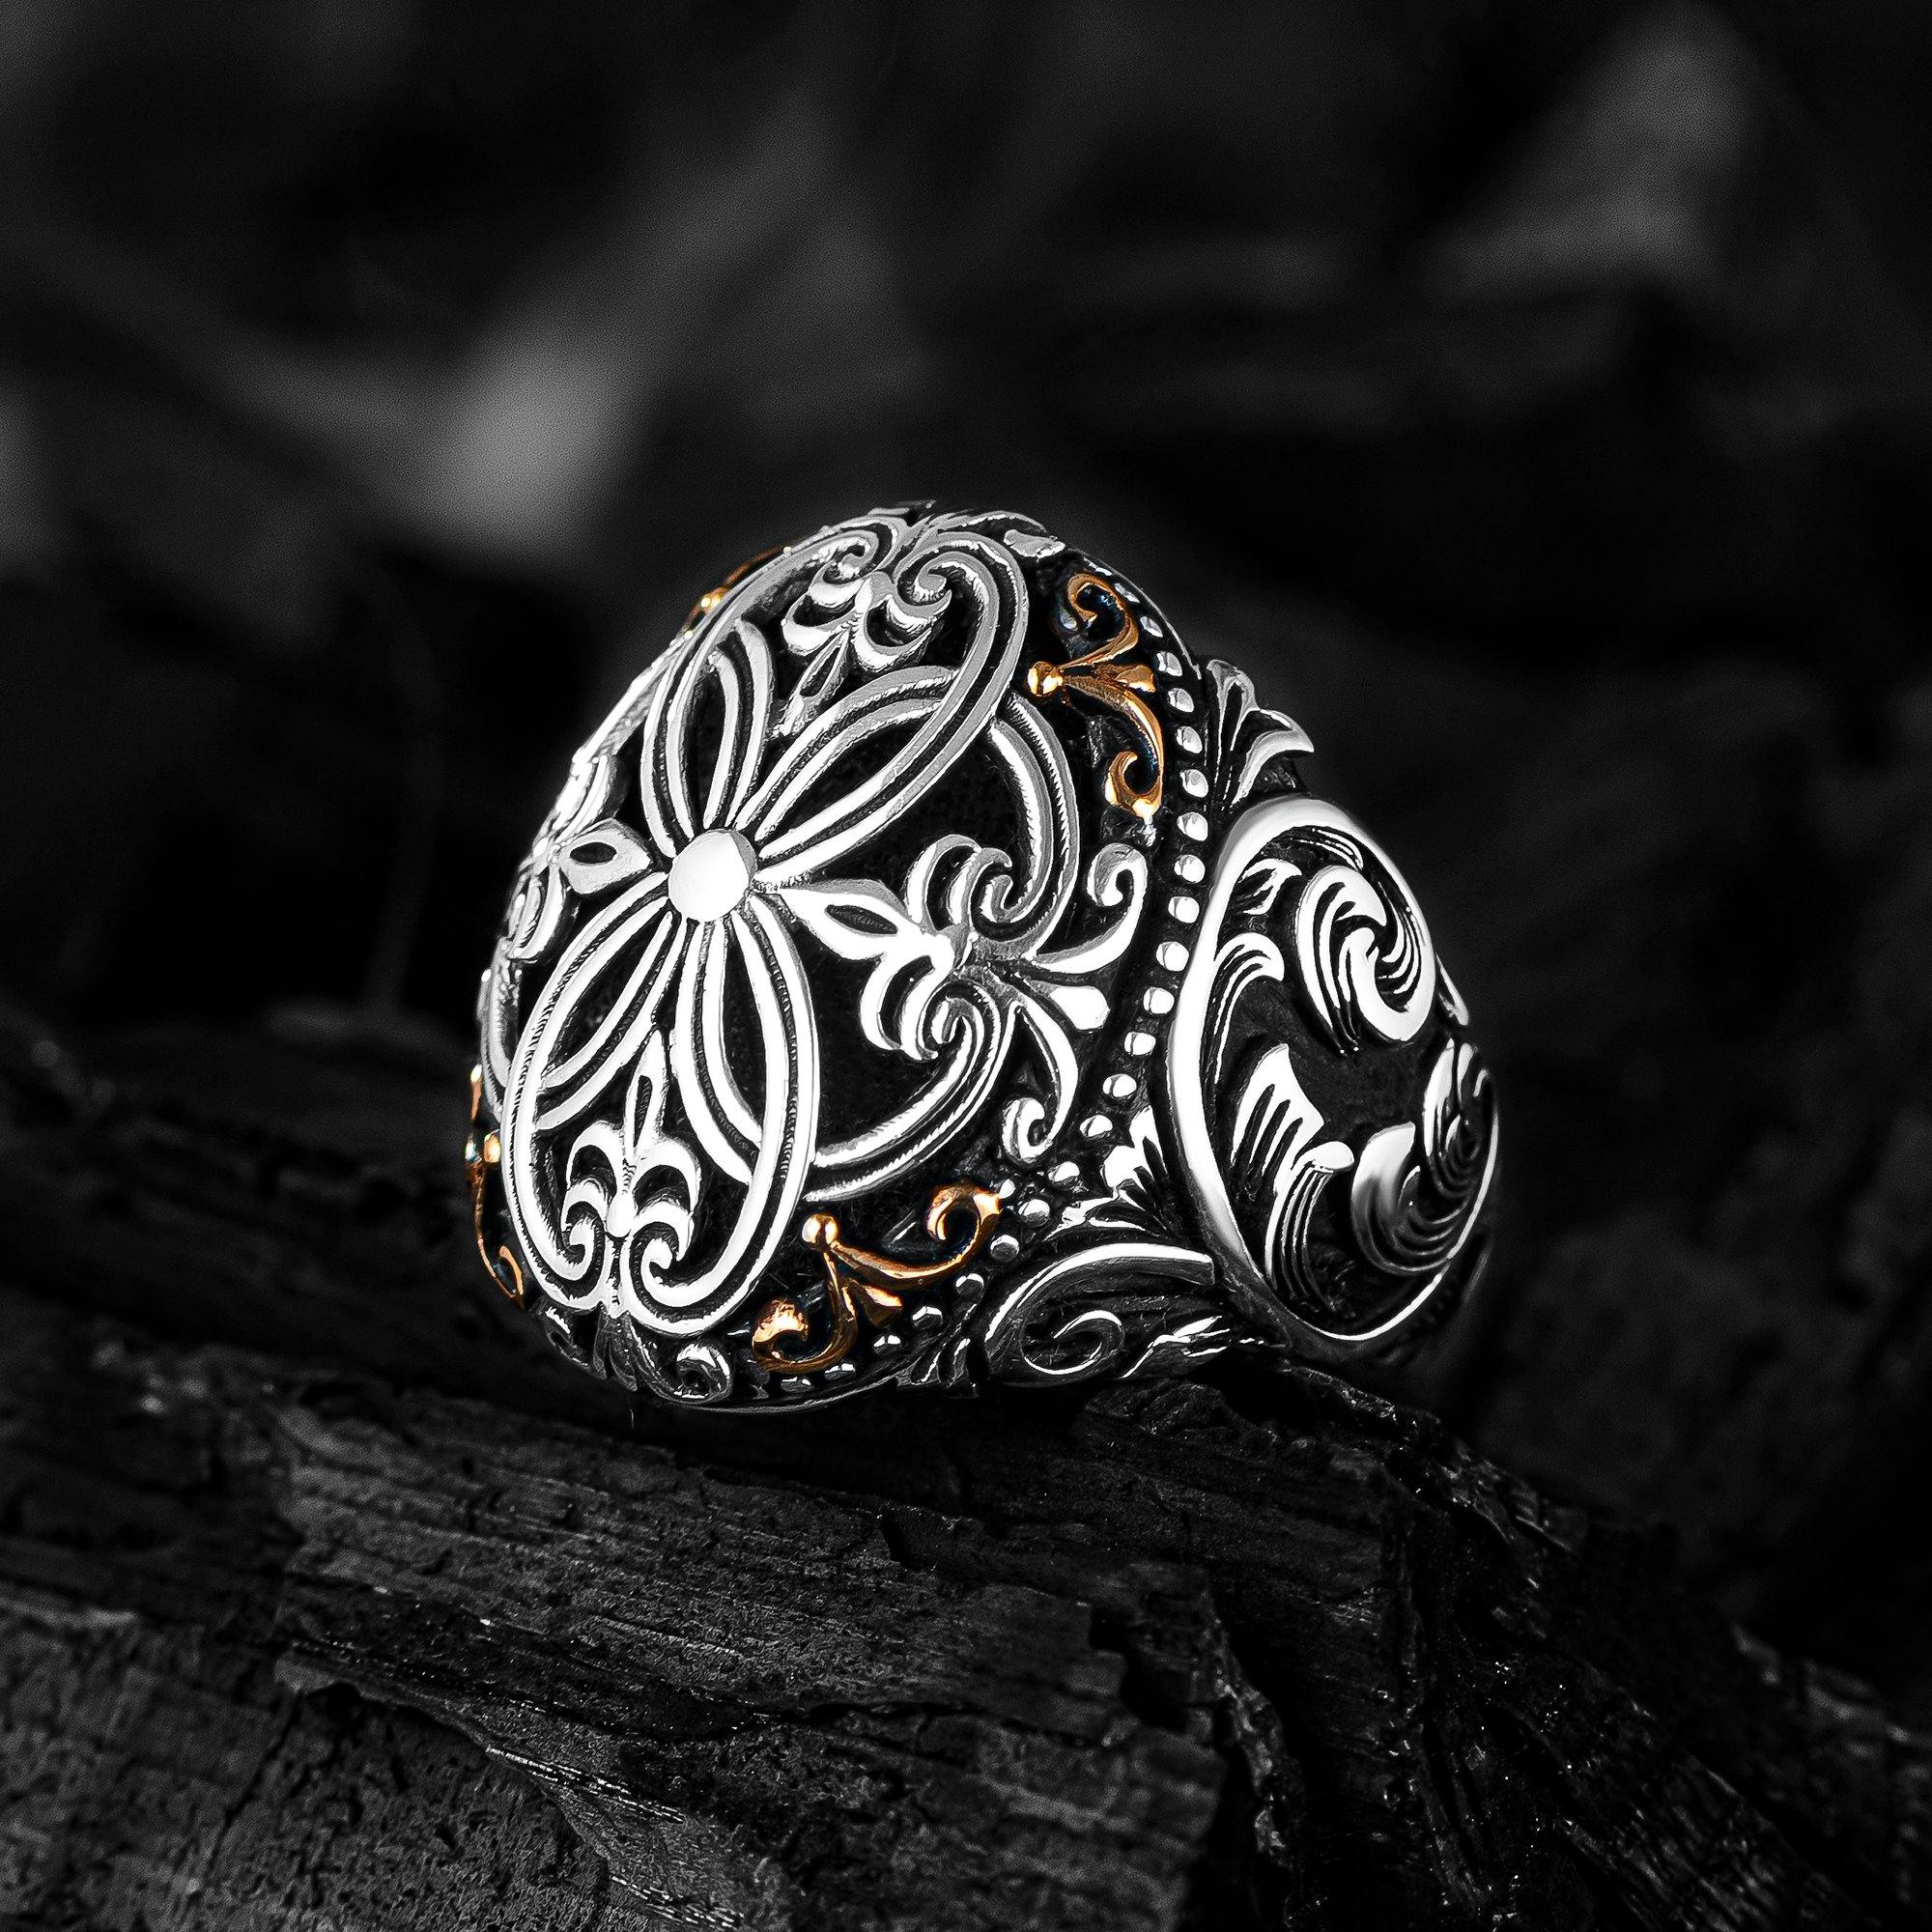 Fleur de Lis Engraved Ring, Modern Lily Design Men Silver Ring - OXO SILVER